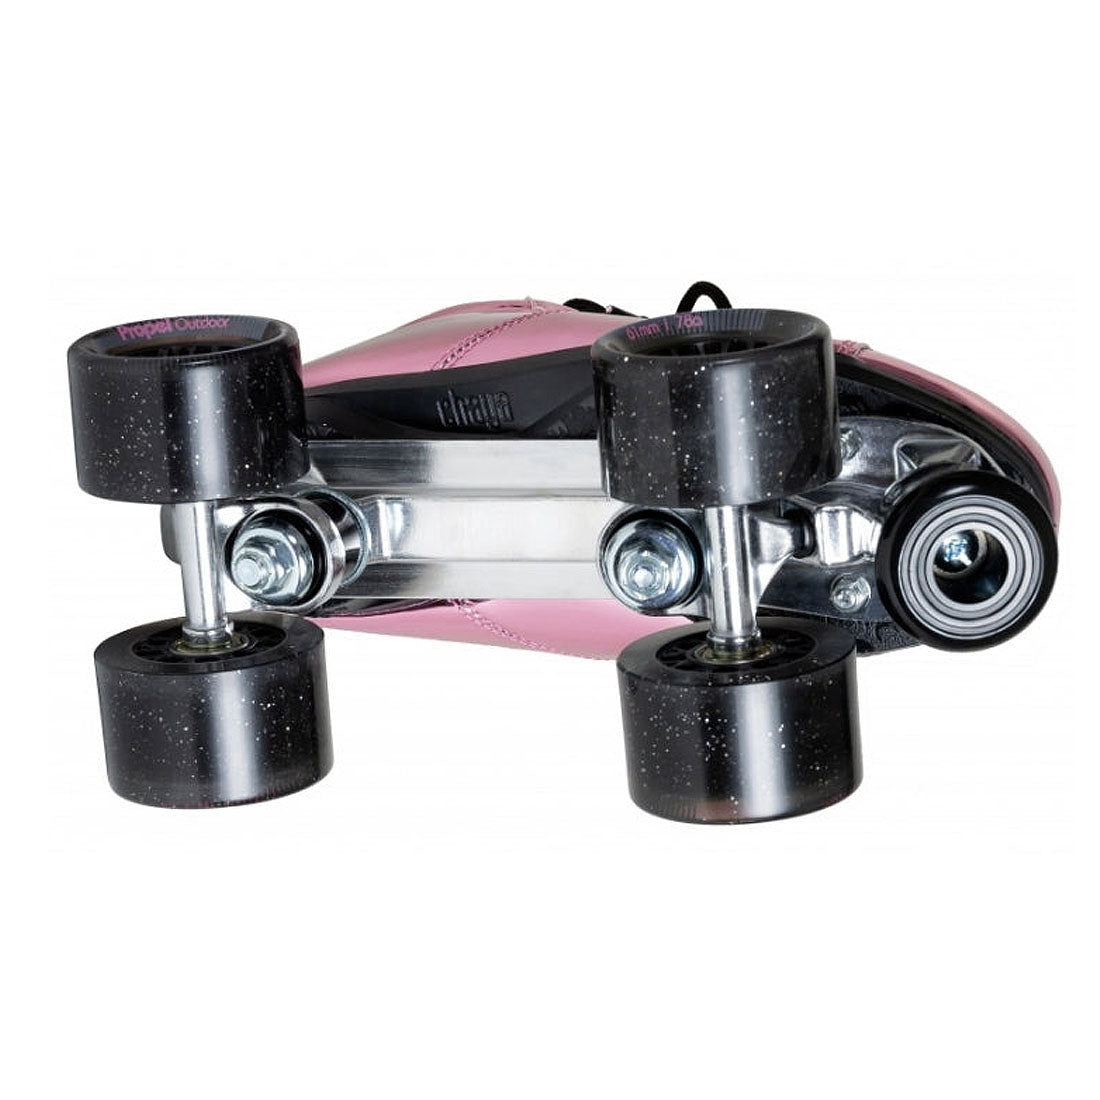 Chaya Vintage Skate - Pink Laser Roller Skates